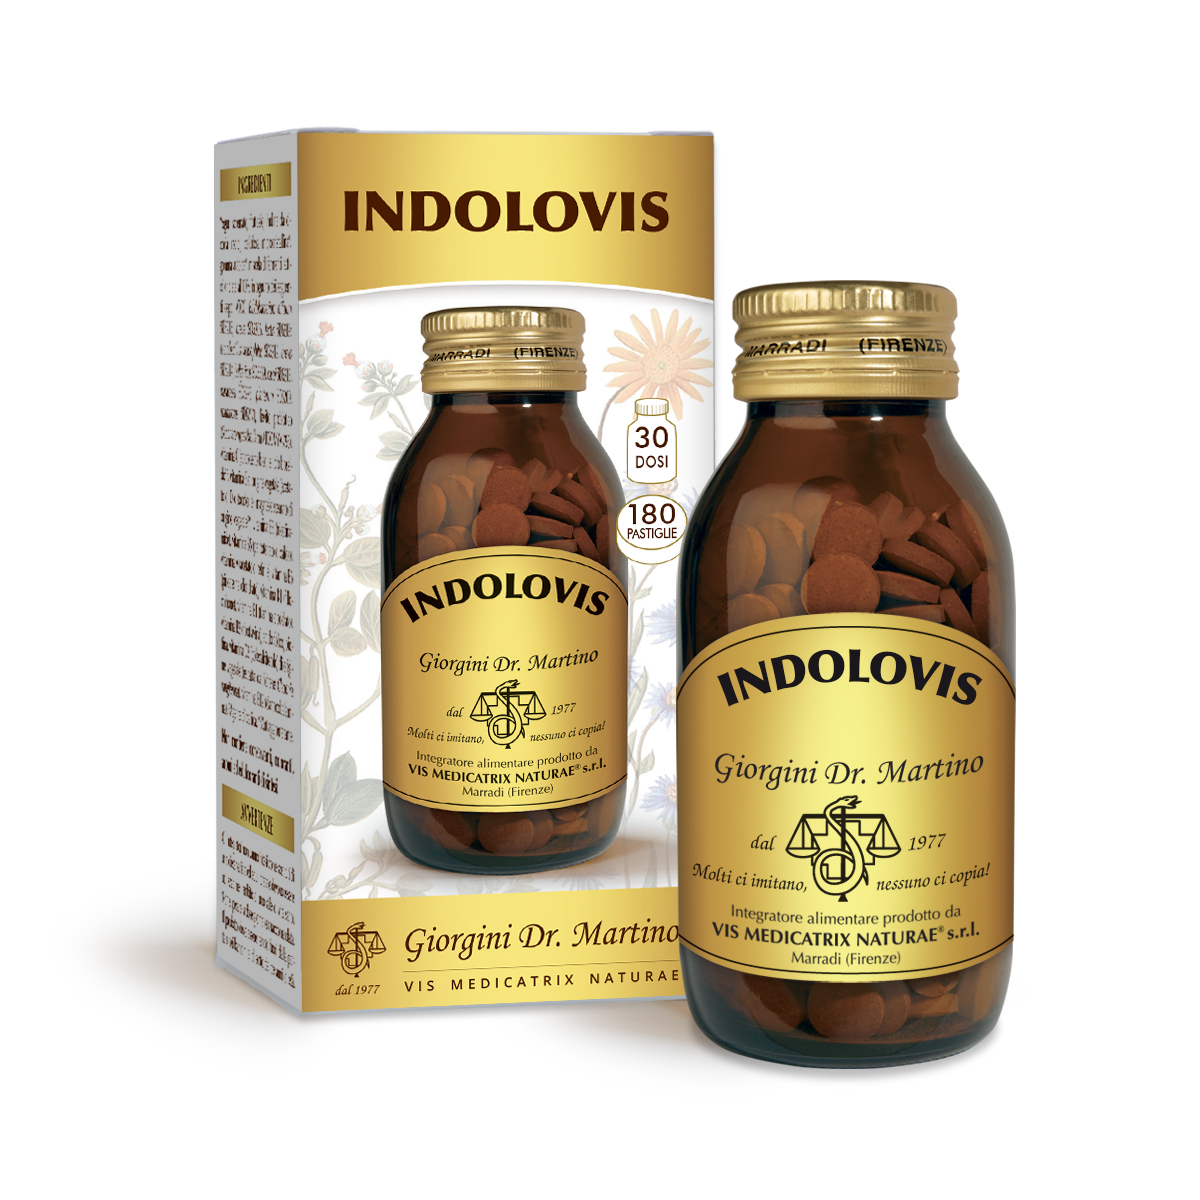 INDOLOVIS 90 g - 180 pastilles de 500 mg